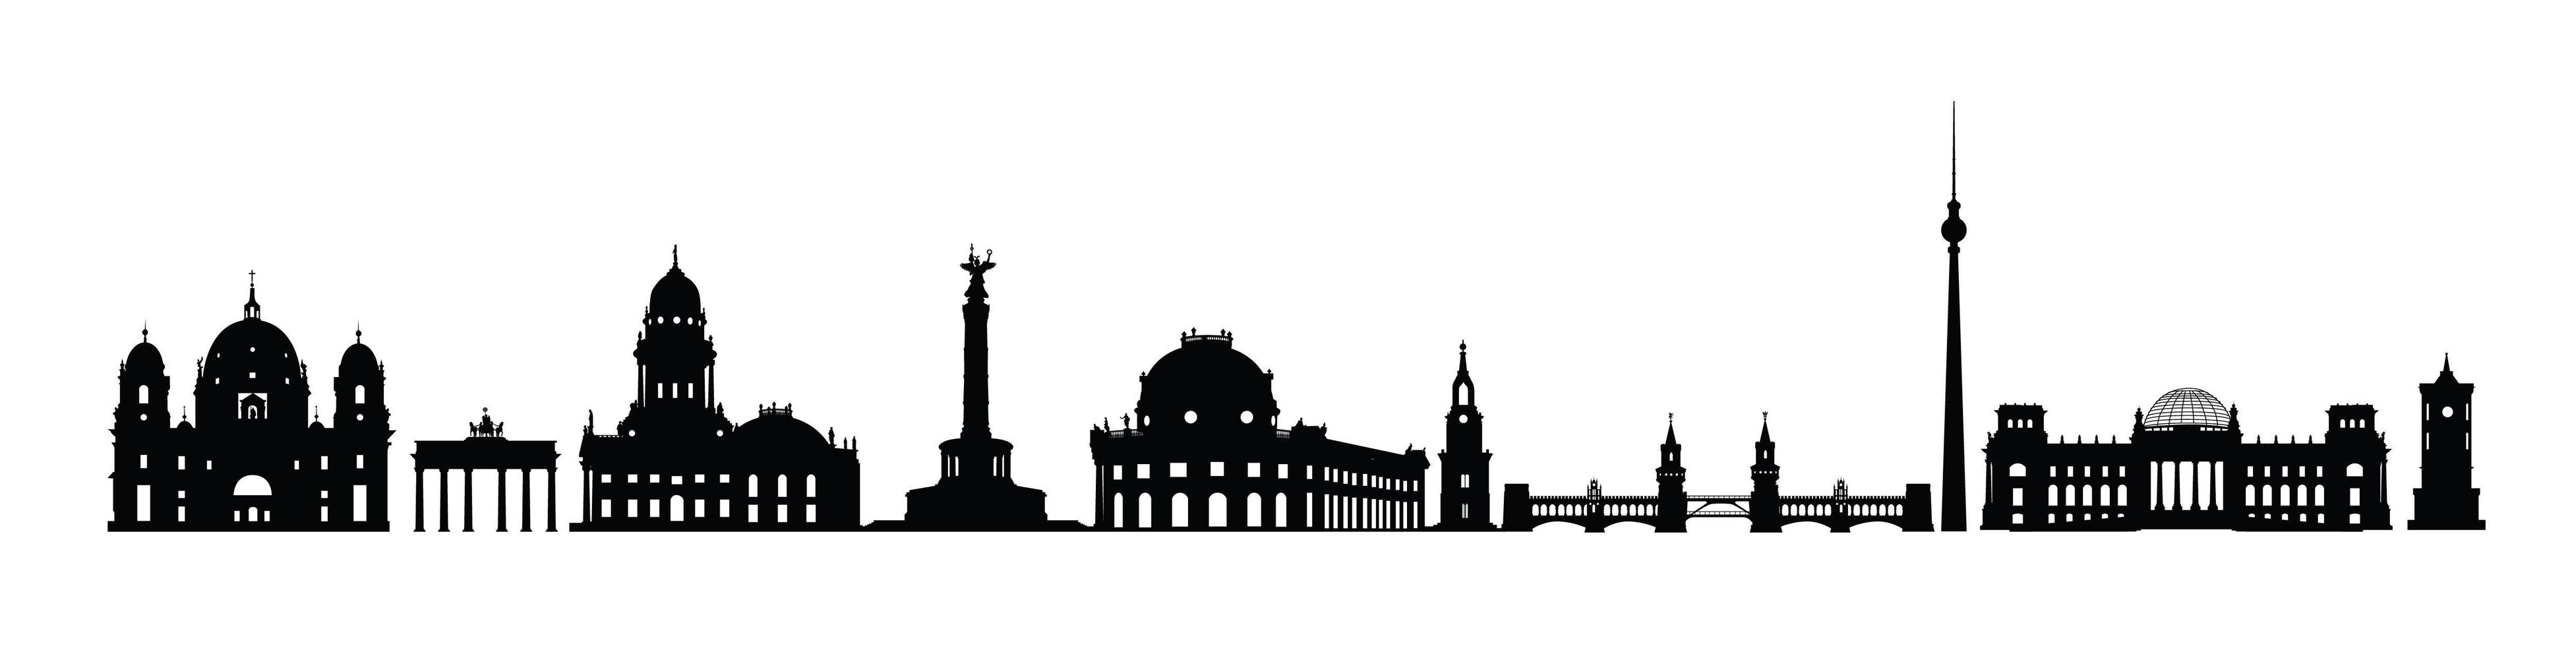 Skyline von Berlin City. verschiedene Wahrzeichen Silhouette von Berlin, Deutschland. Reise Deutschland berühmte Orte Icon Set vektor